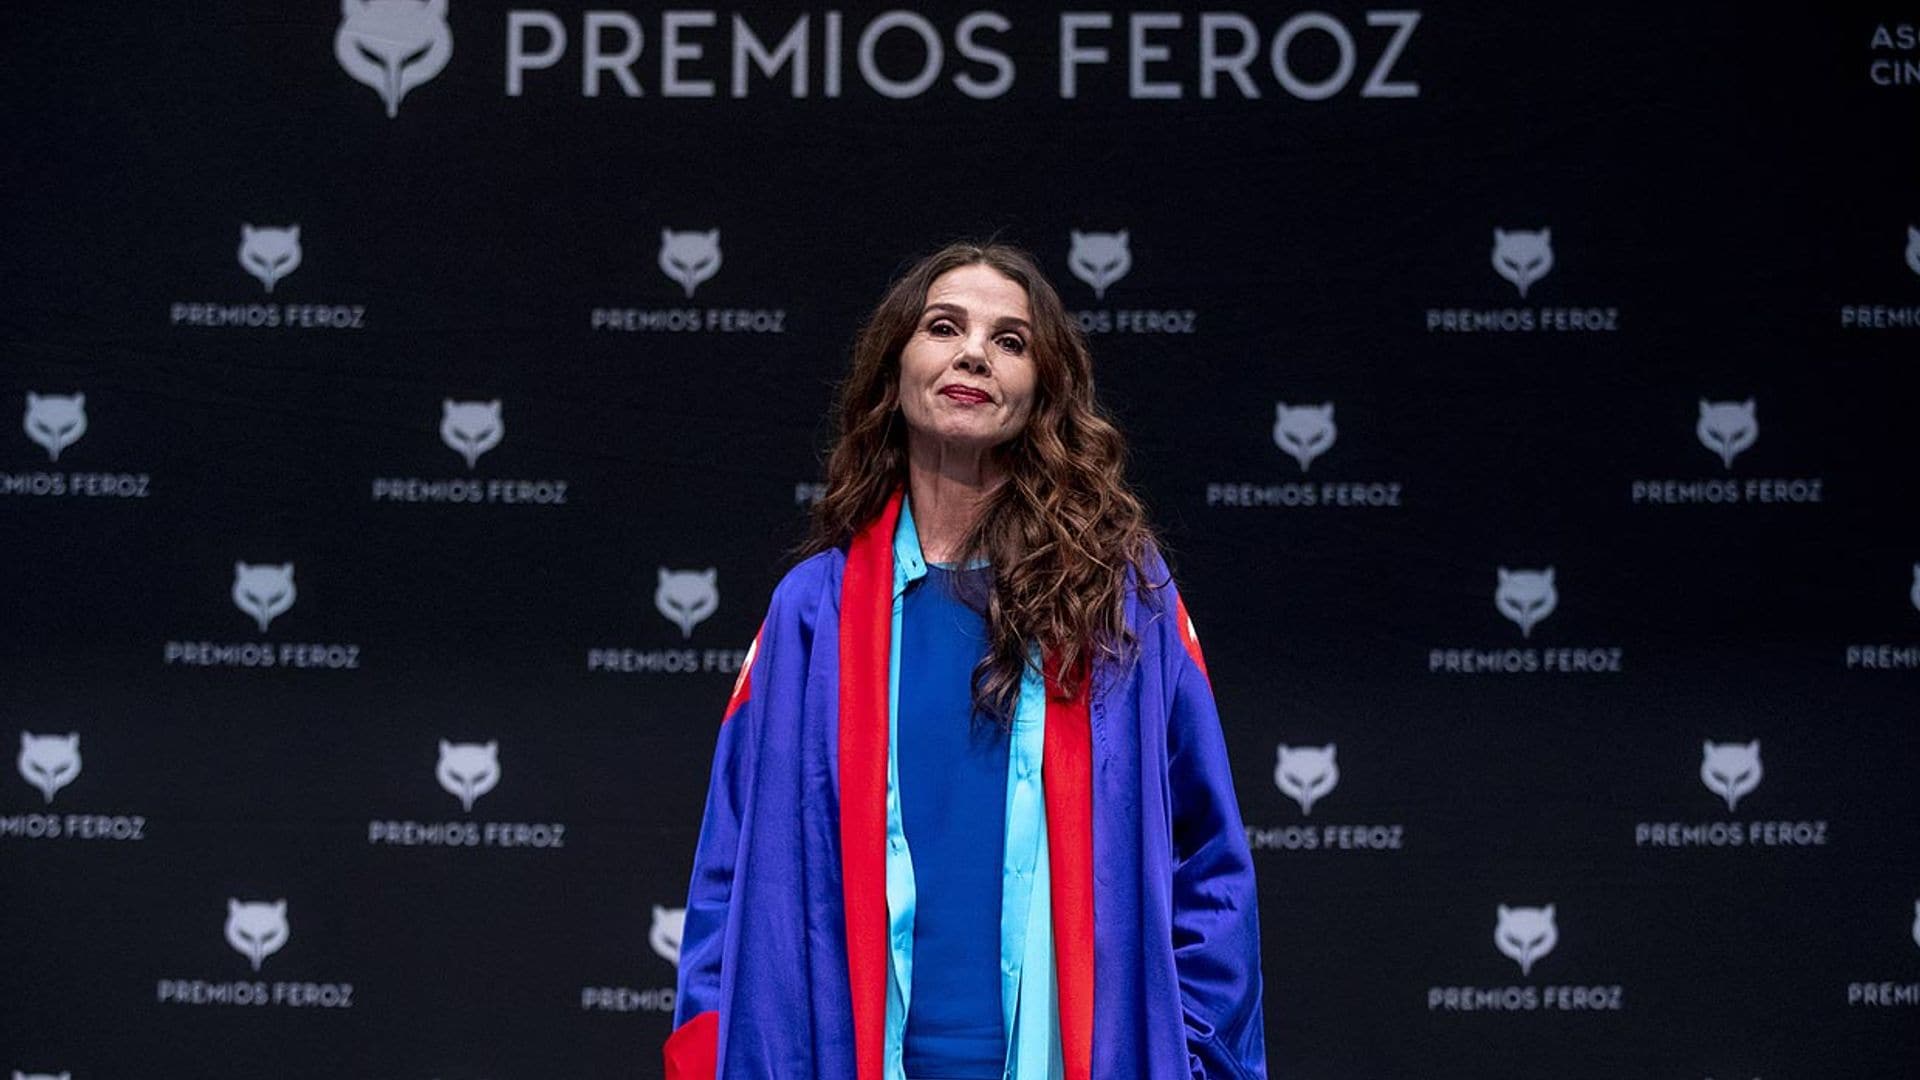 Los Premios Feroz se desmarcan de las polémicas declaraciones de Victoria Abril sobre la COVID-19